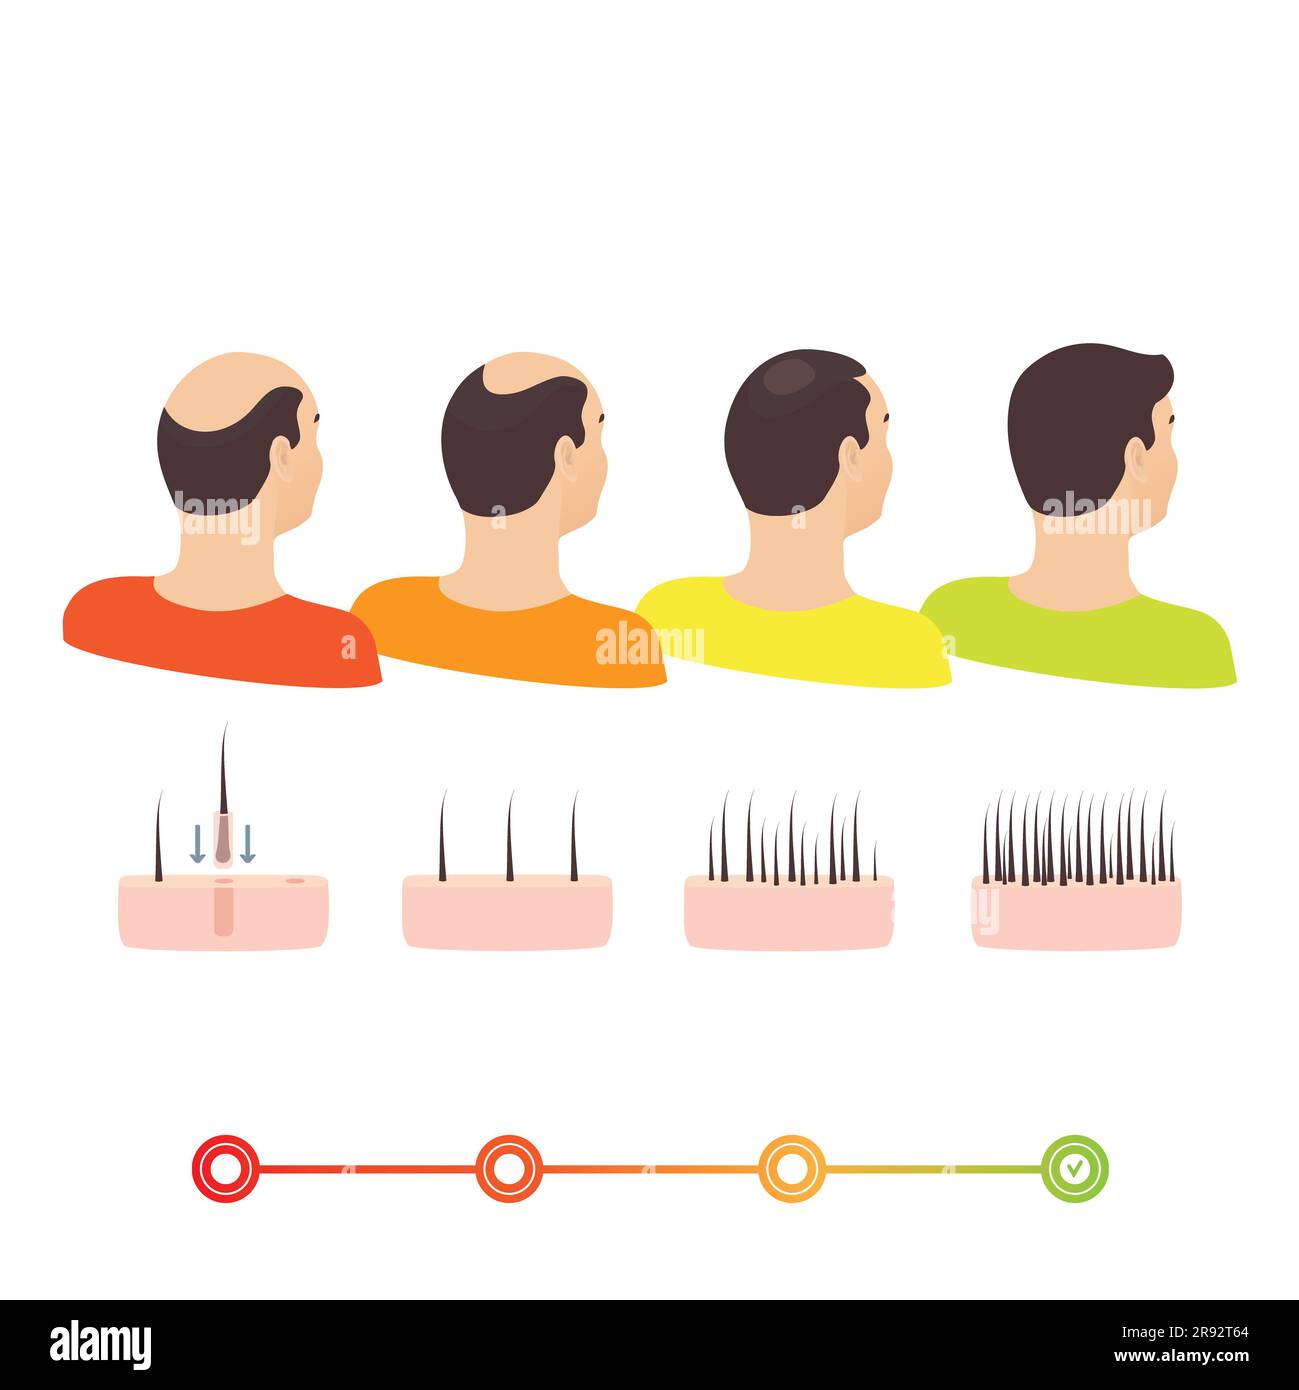 Transplantation de cheveux, illustration Banque D'Images